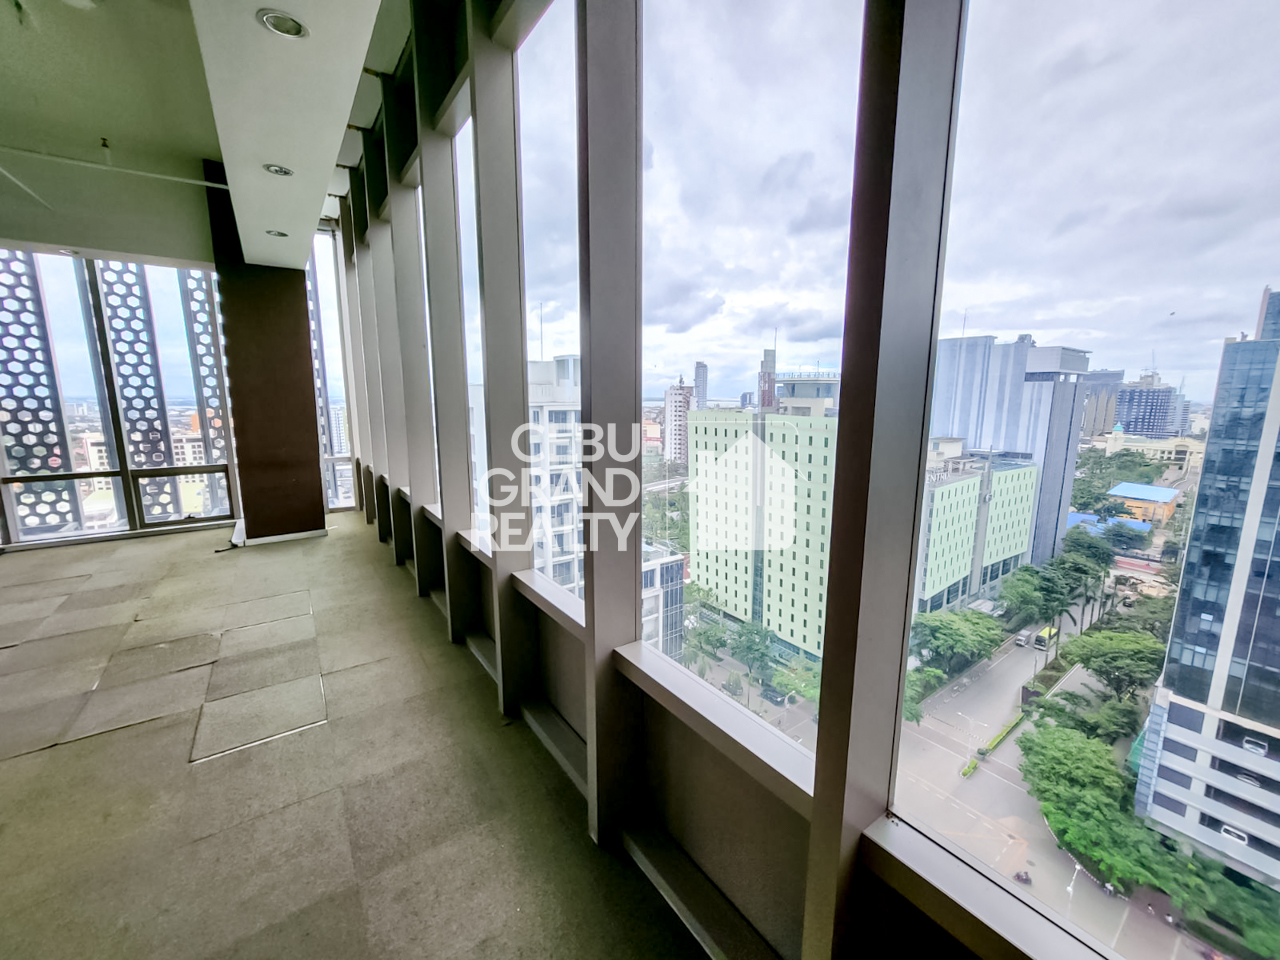 SC26 99 SqM Office Space for Sale in Cebu IT Park - Cebu Grand Realty (7)